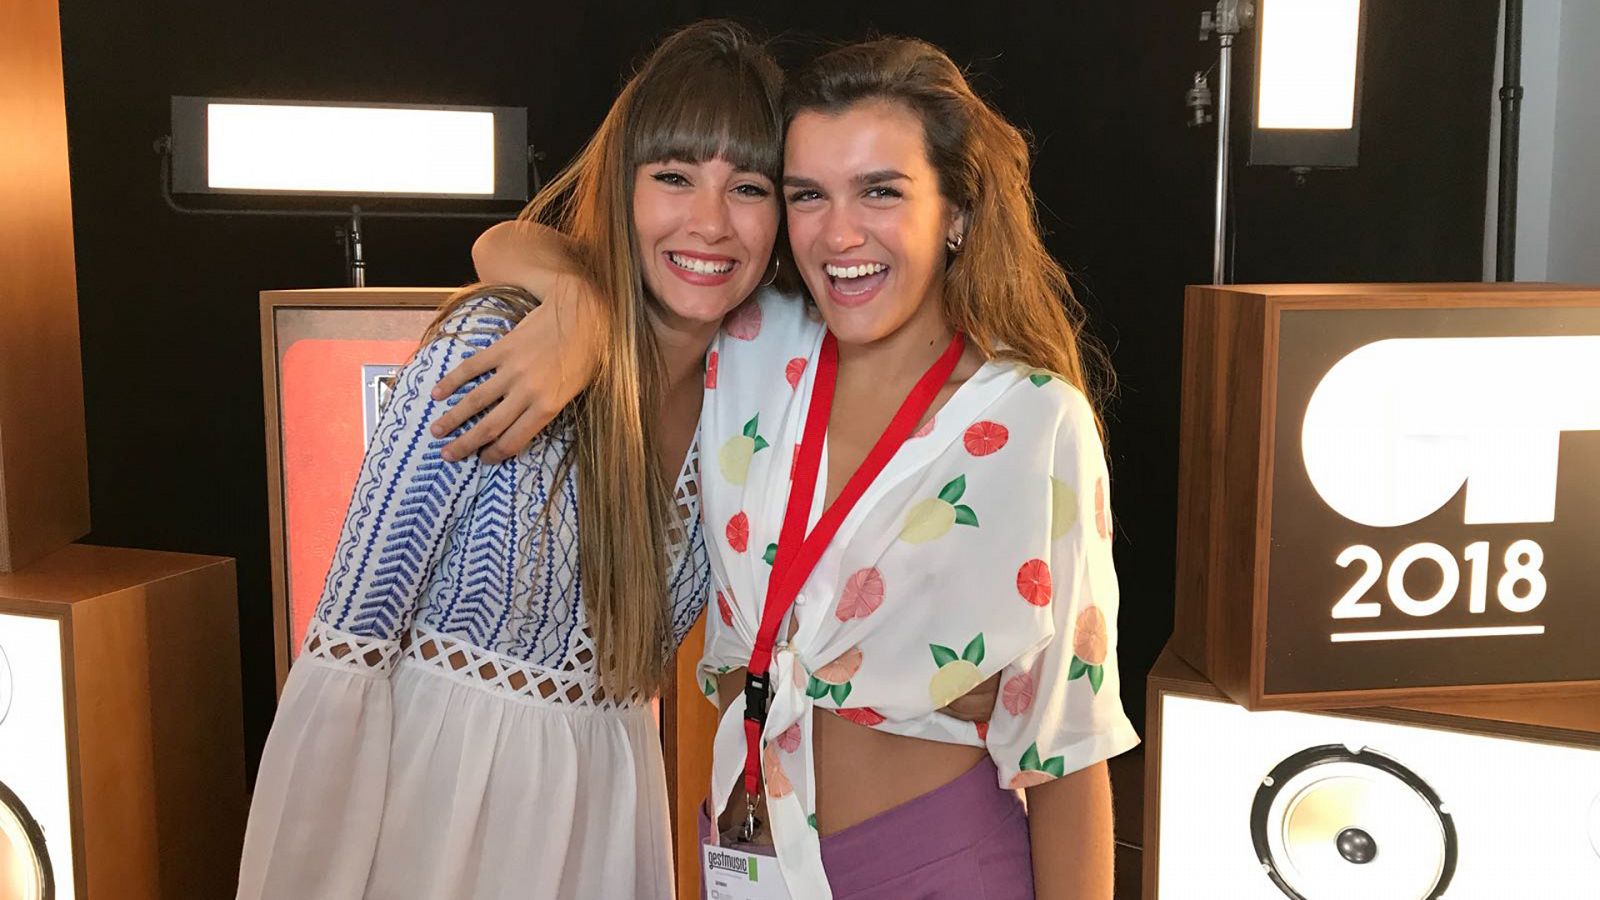 OT 2018 - Amaia canta "Teléfono" en el casting final de 'OT 2017'